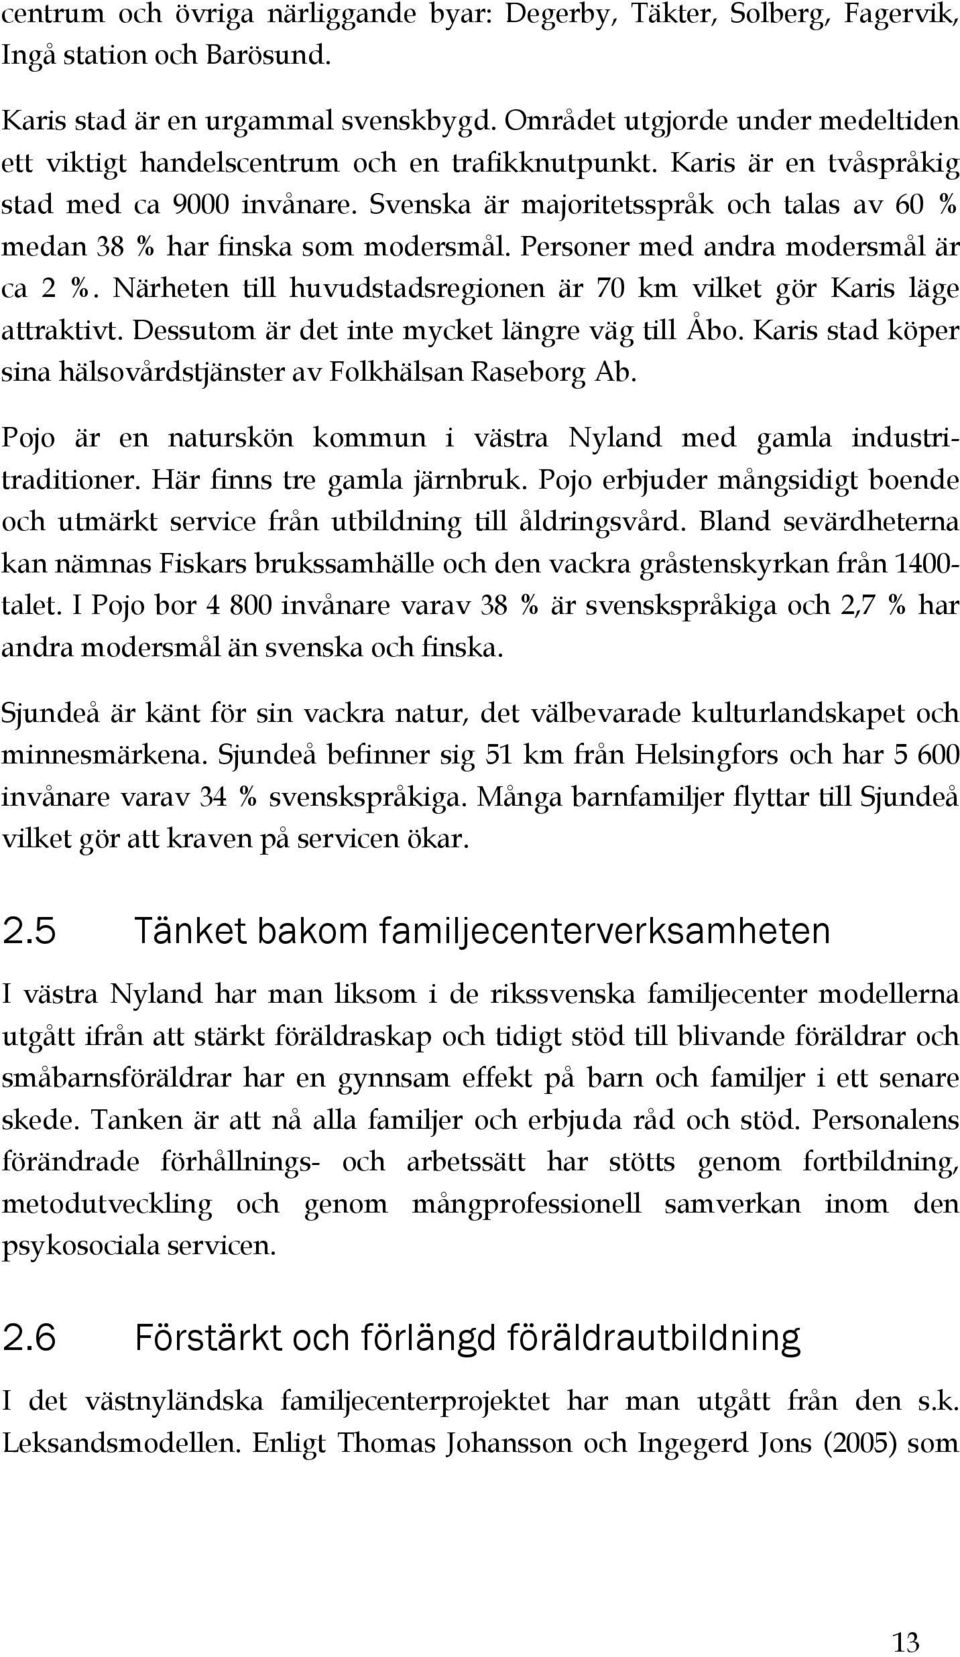 Svenska är majoritetsspråk och talas av 60 % medan 38 % har finska som modersmål. Personer med andra modersmål är ca 2 %. Närheten till huvudstadsregionen är 70 km vilket gör Karis läge attraktivt.